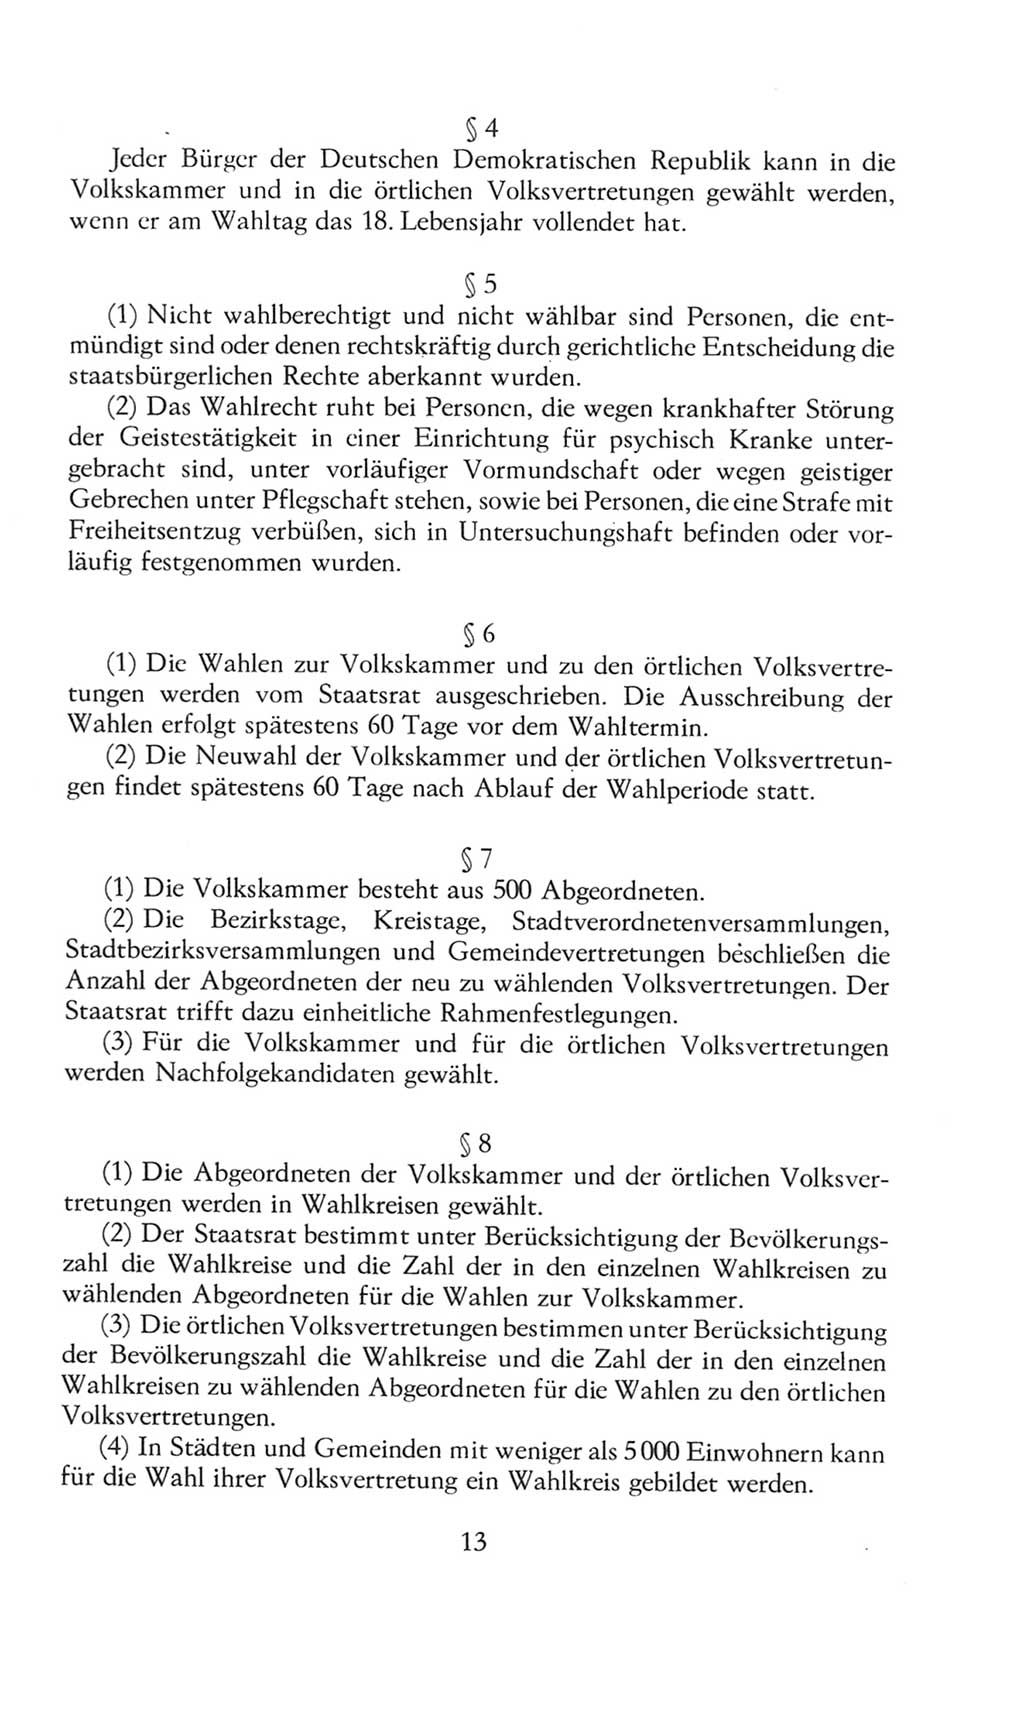 Volkskammer (VK) der Deutschen Demokratischen Republik (DDR), 8. Wahlperiode 1981-1986, Seite 13 (VK. DDR 8. WP. 1981-1986, S. 13)